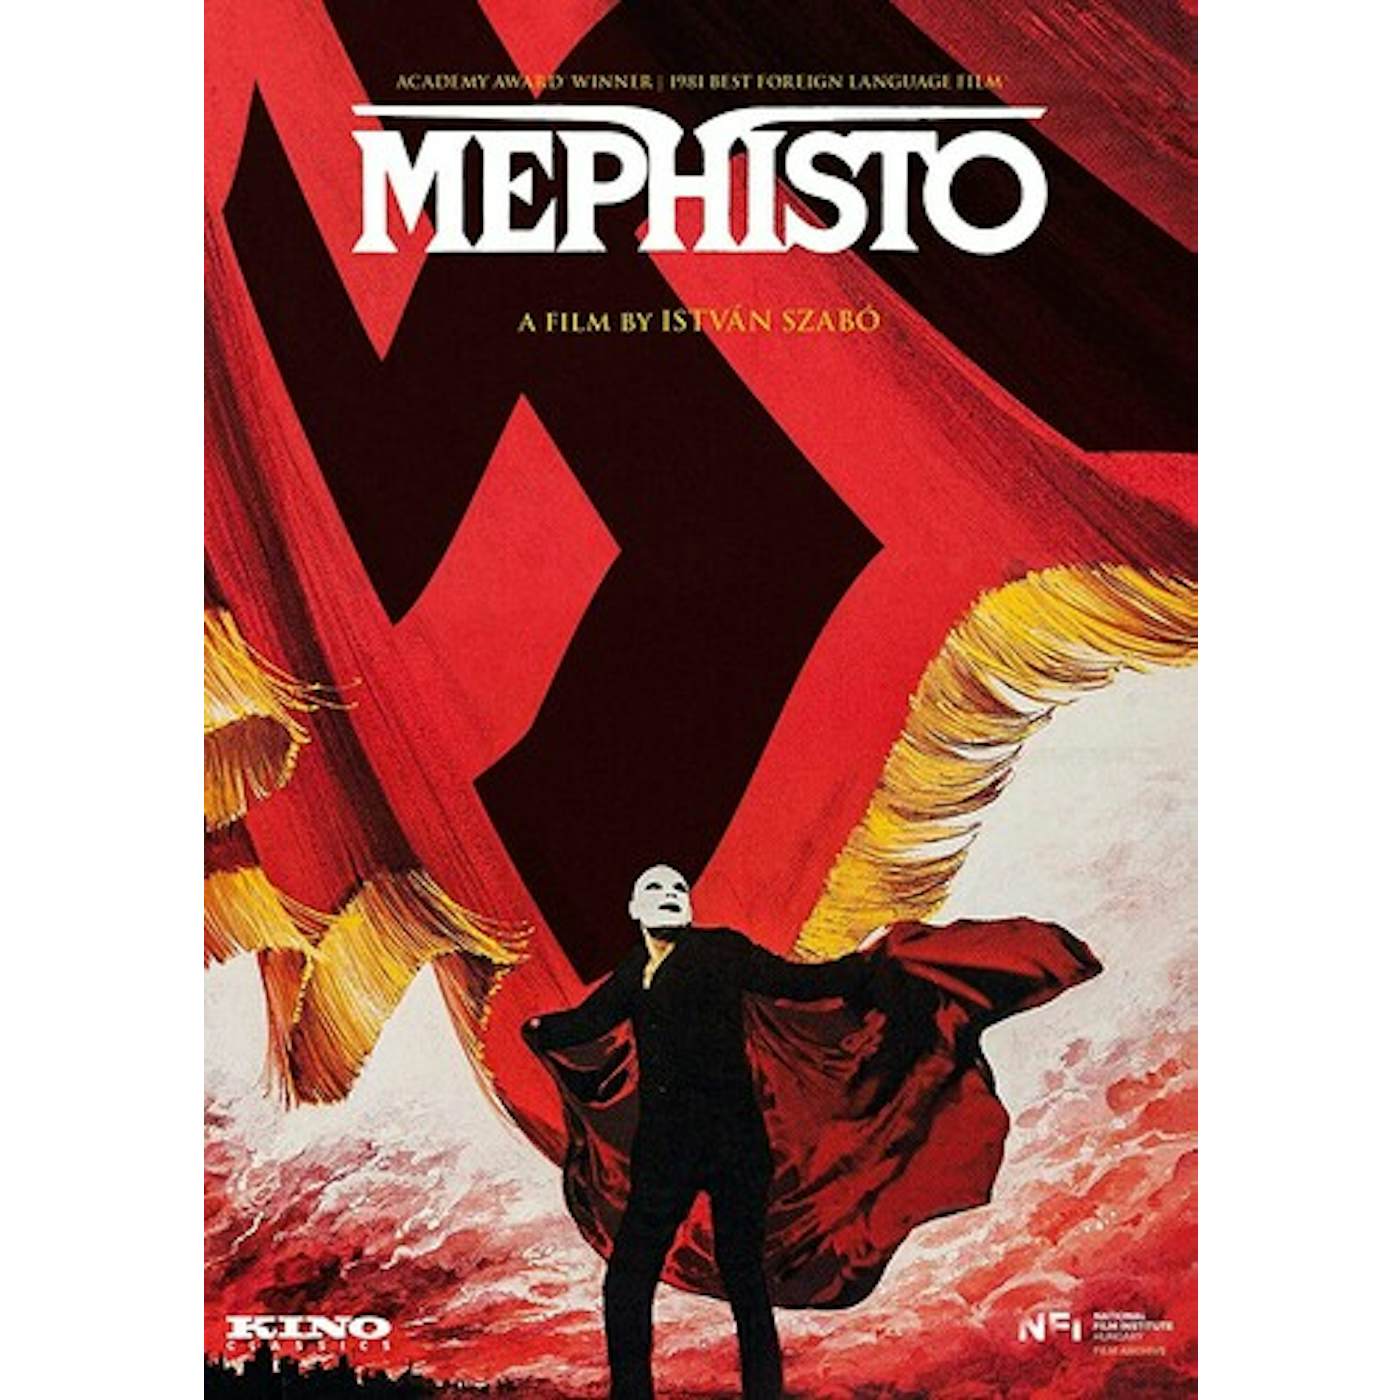 MEPHISTO (1981) DVD